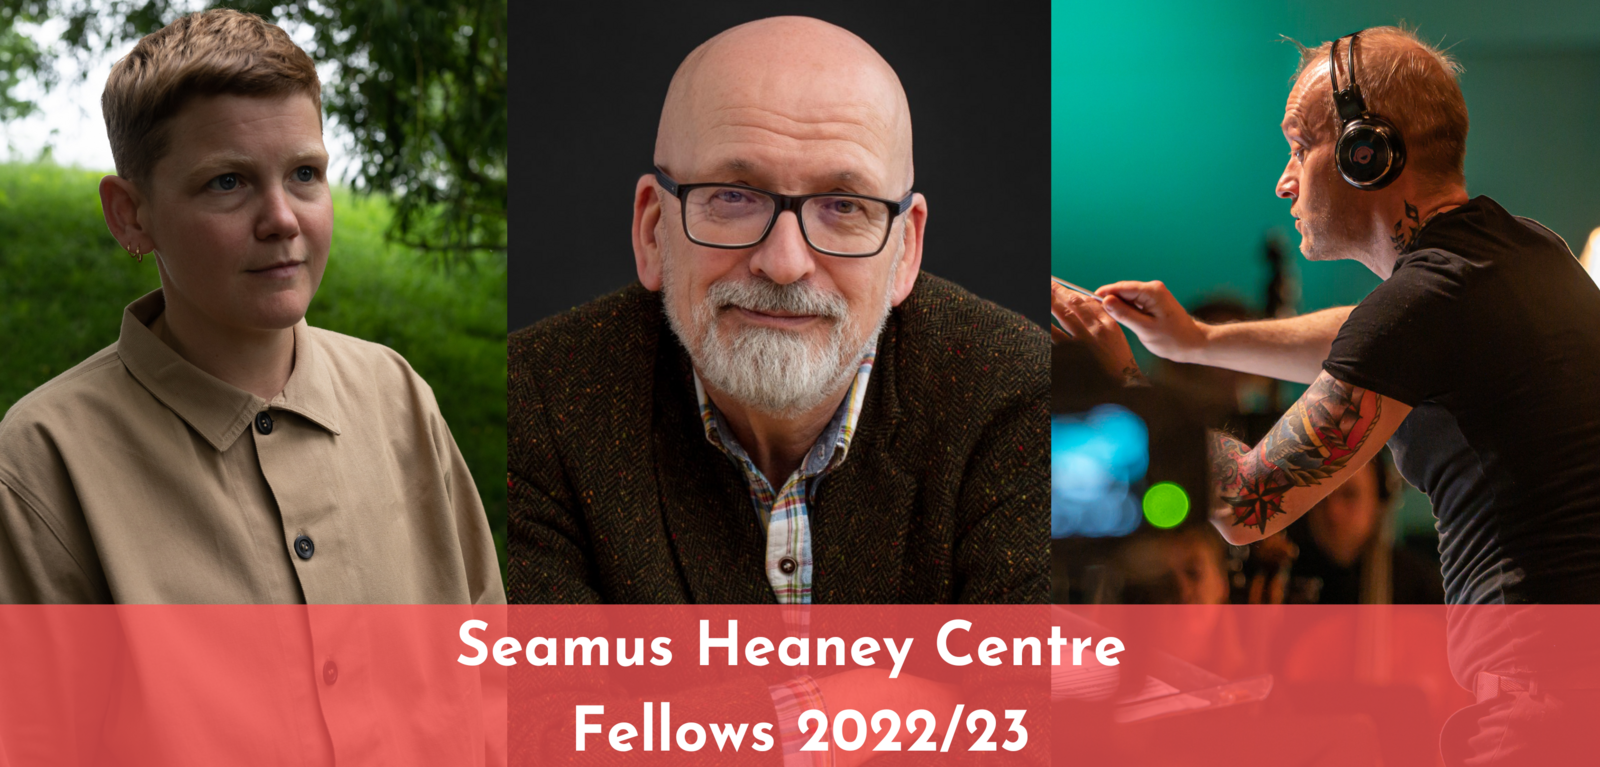 Seamus Heaney Centre Fellows 2022-23